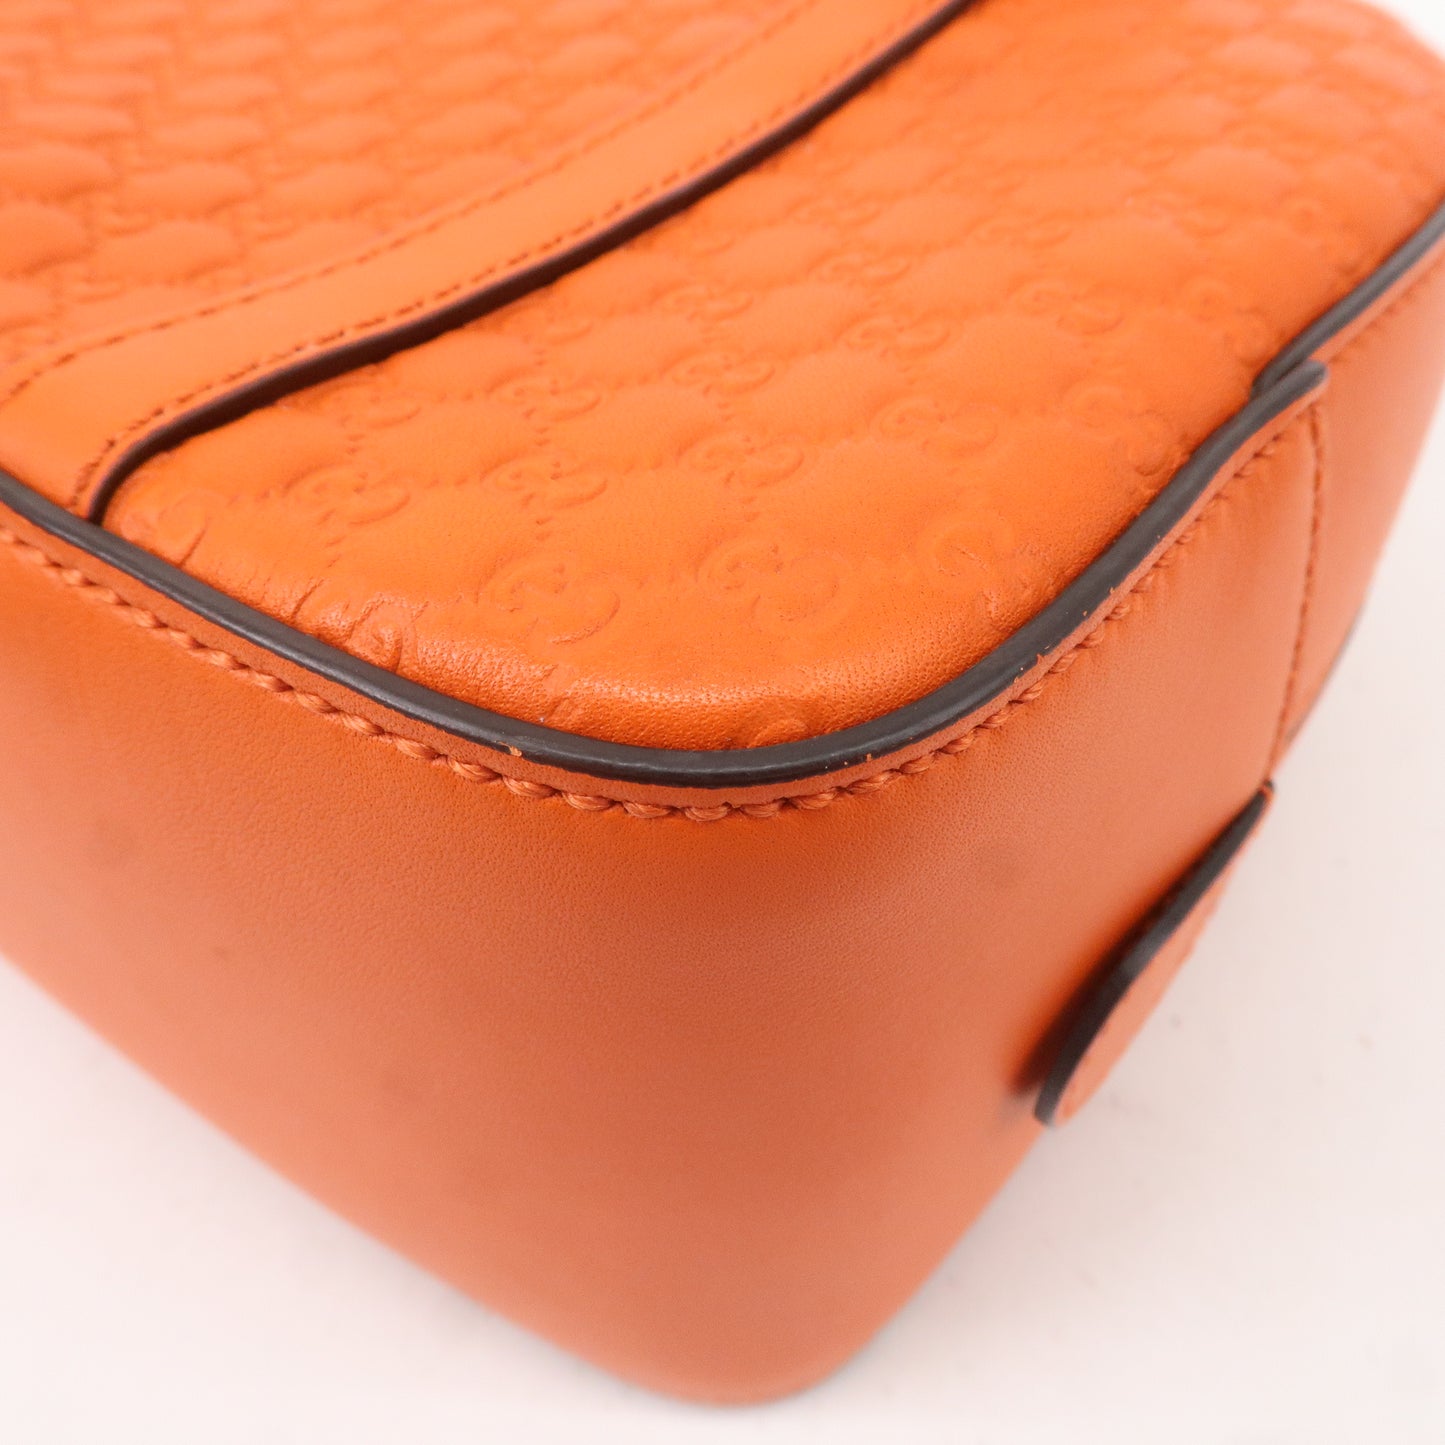 GUCCI Micro Guccissima Leather 2Way Shoulder Bag Orange 510289